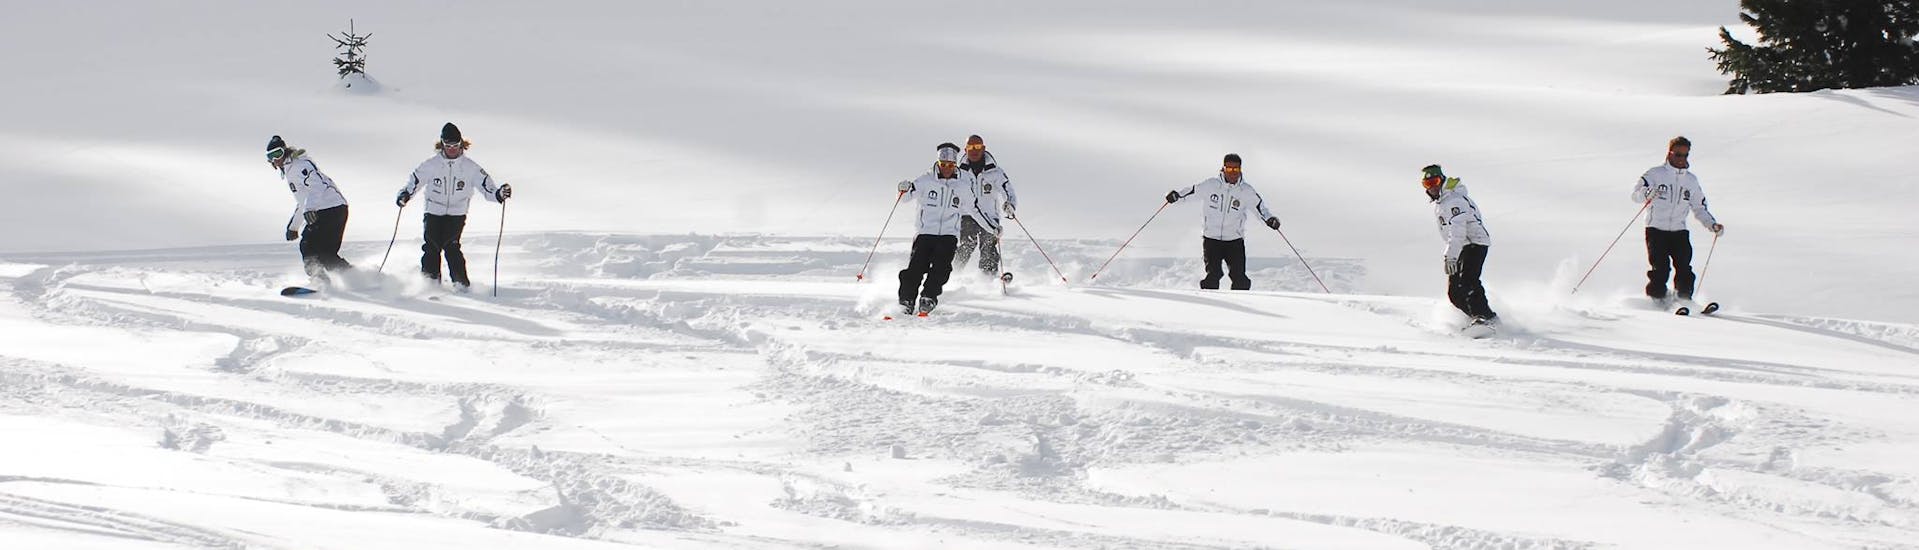 Cours particulier de ski Adultes dès 4 ans pour Tous niveaux.